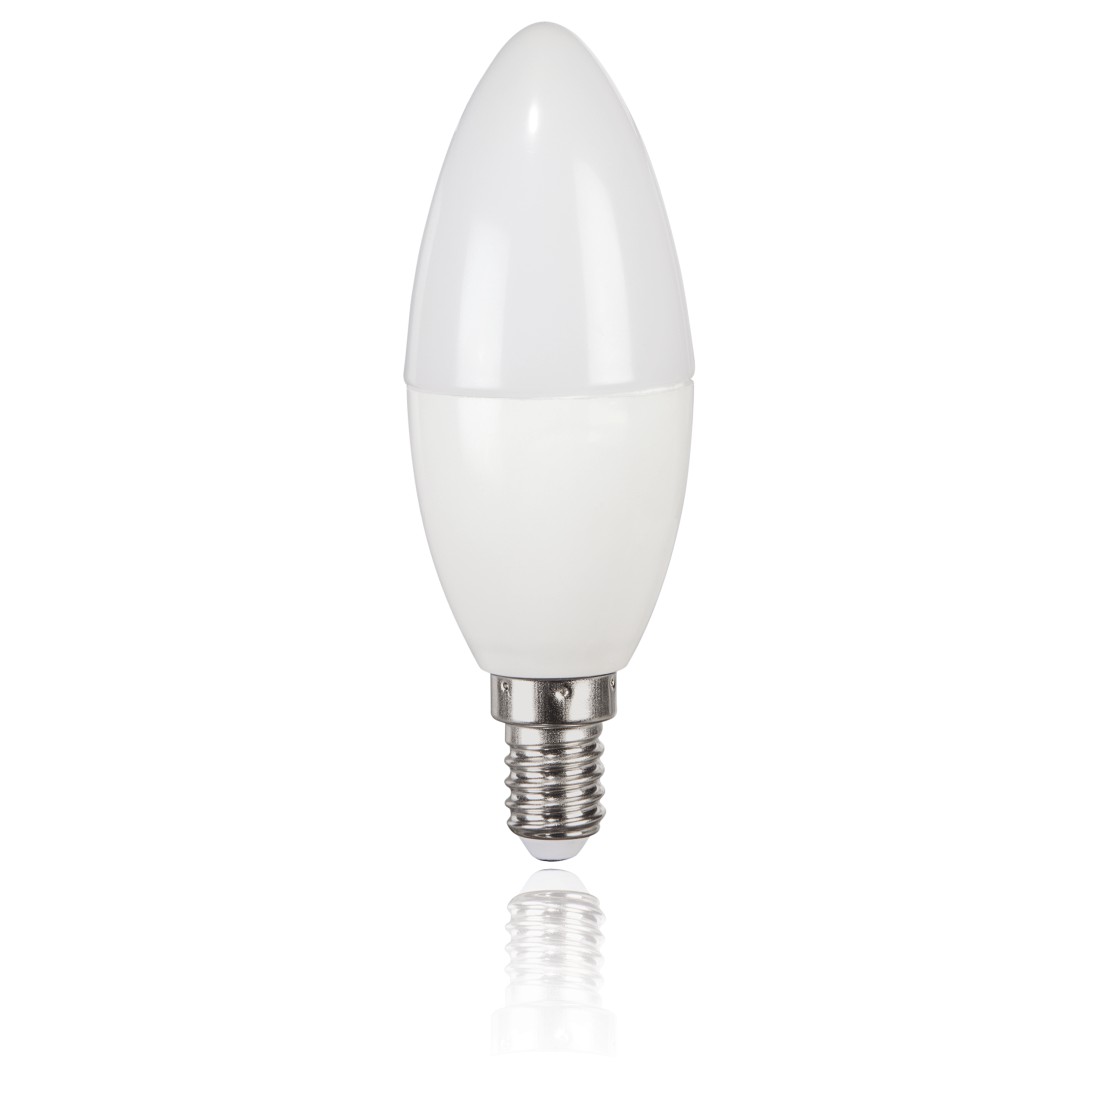 abx2 High-Res Image 2 - Xavax, Ampoule LED, E14, 806 lm rempl. 60 W, ampoule bougie, blanc chaud